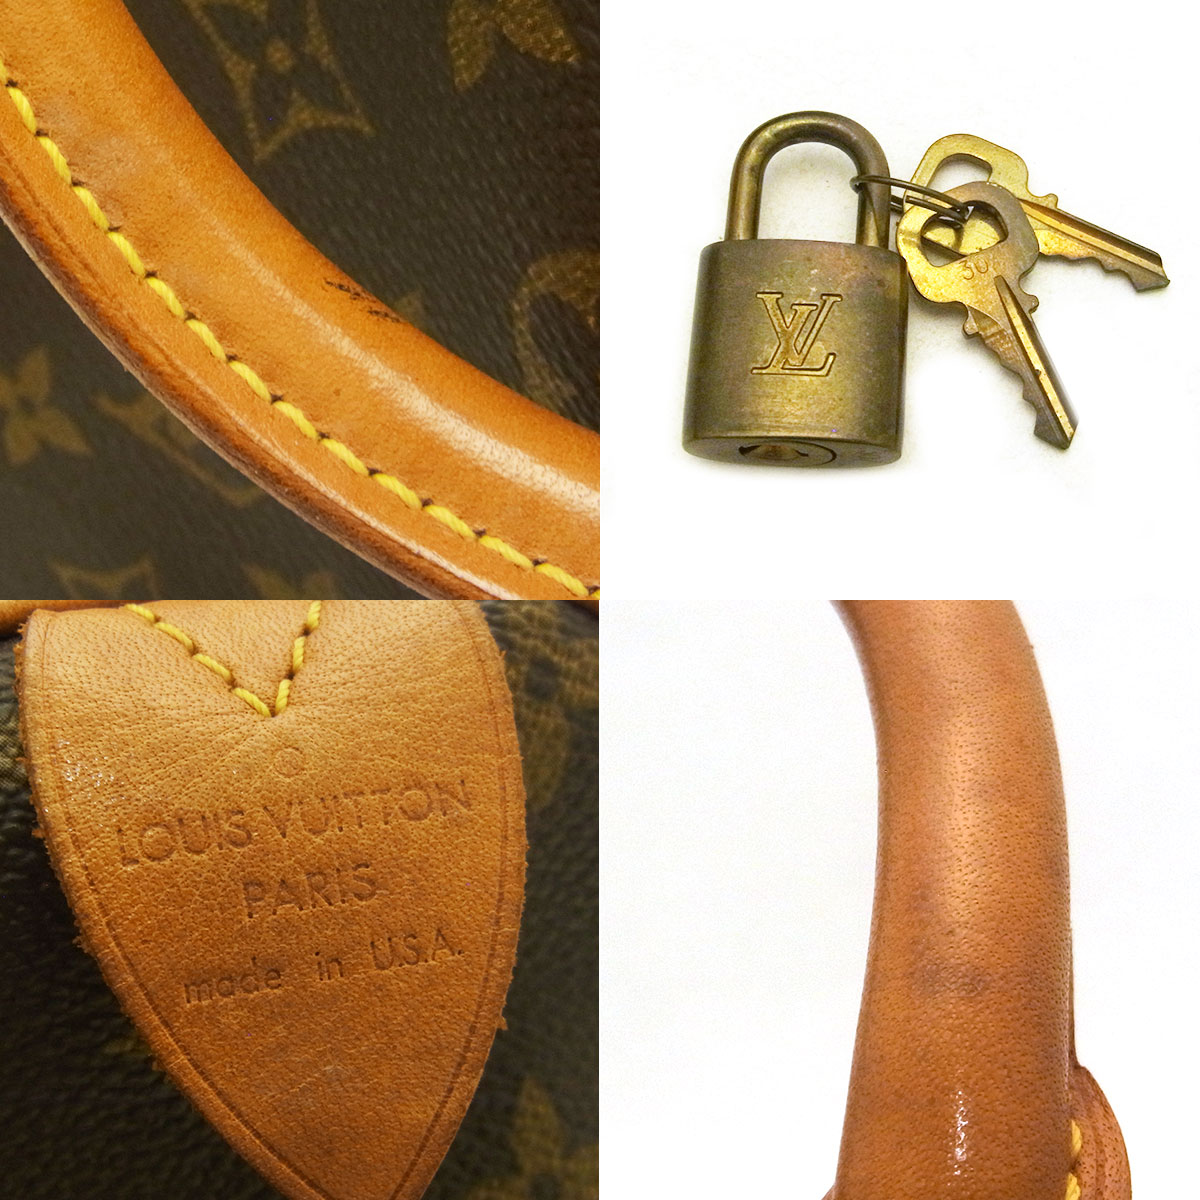 ルイヴィトン(Louis Vuitton) スピーディ30 M41526 ボストンバッグ 鍵 